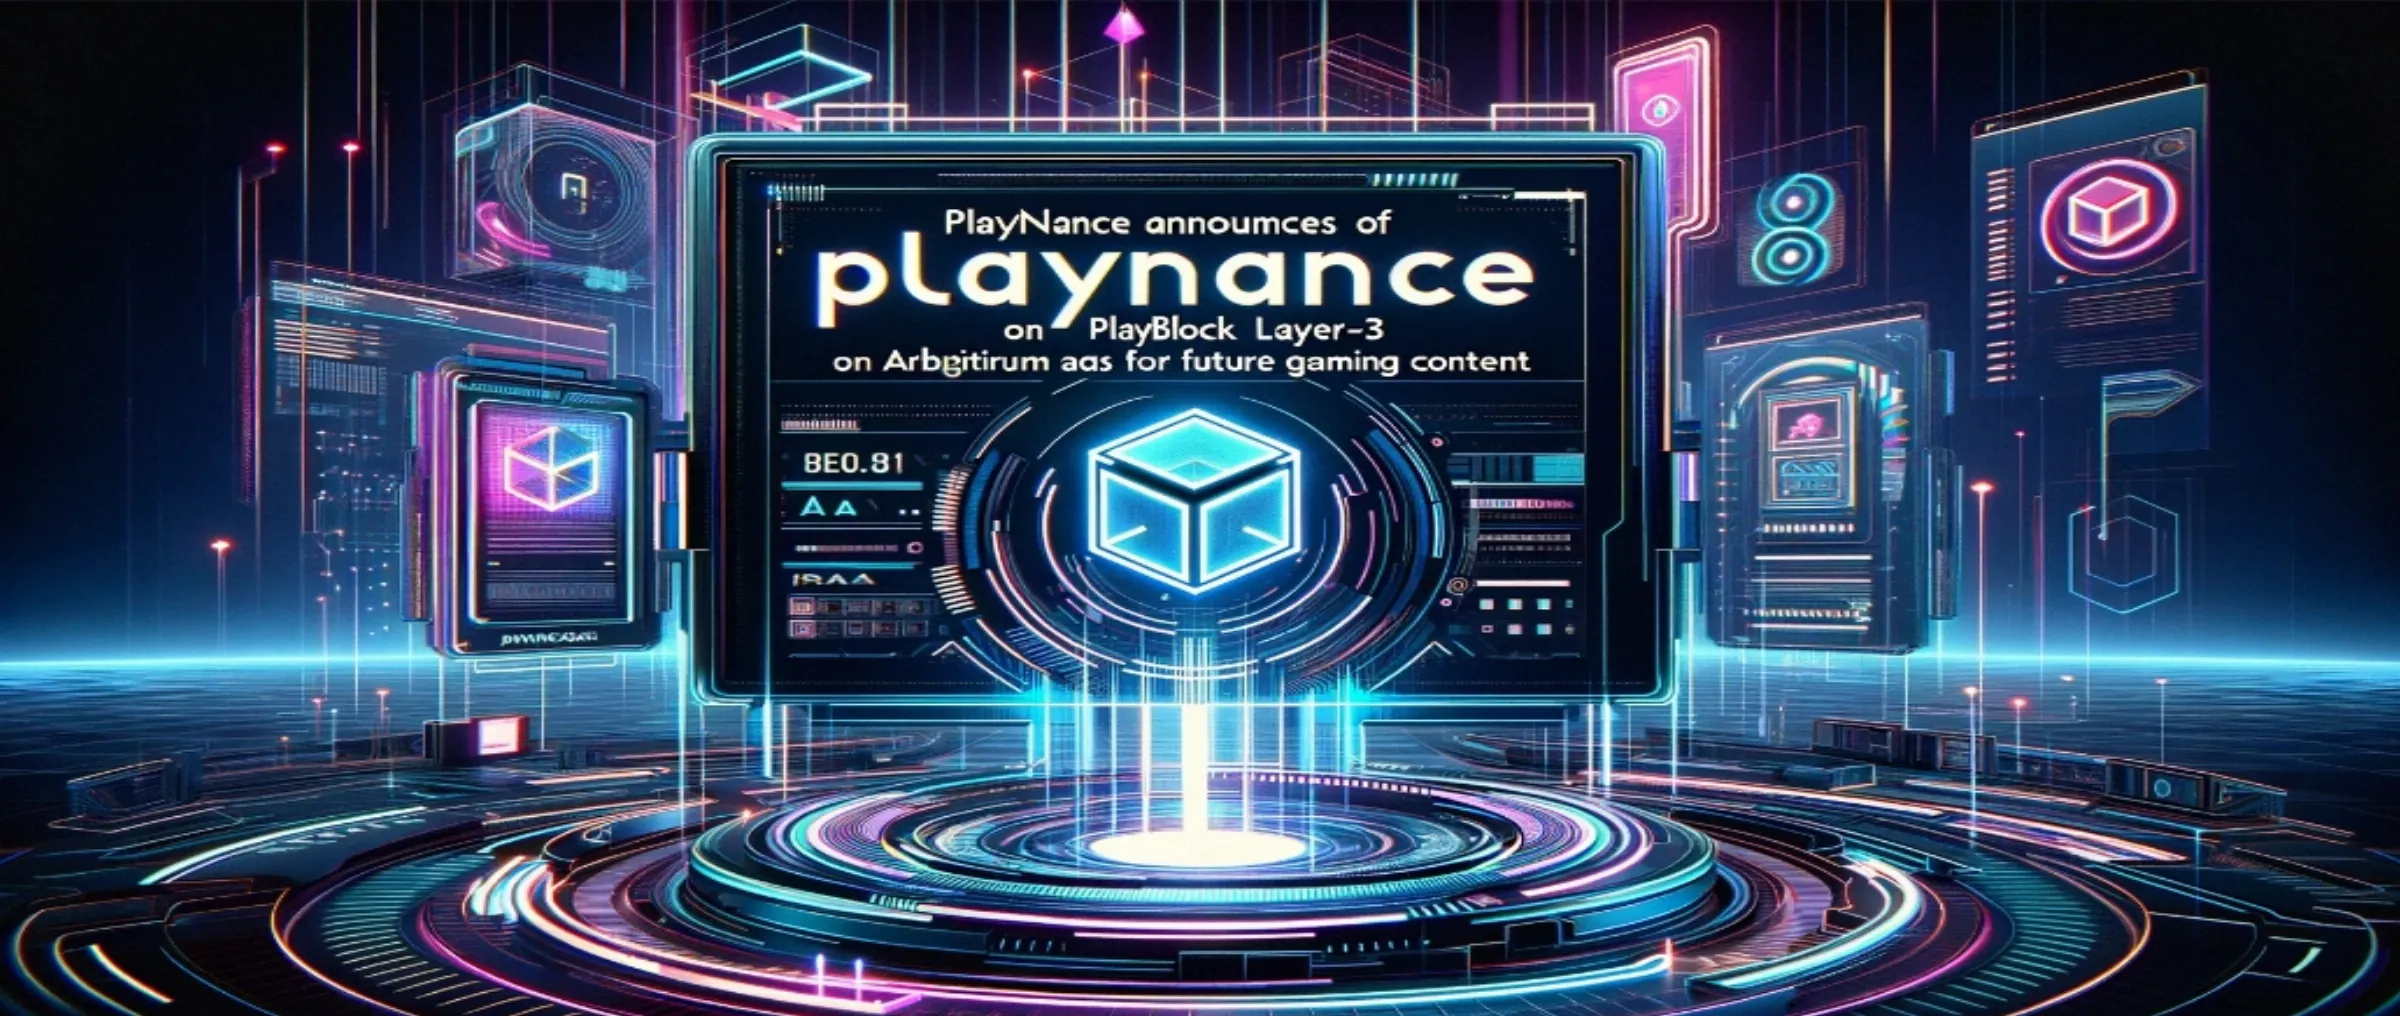 Playnance анонсирует запуск PlayBlock Layer-3 на Arbitrum с использованием Gelato RaaS для будущего игрового контента